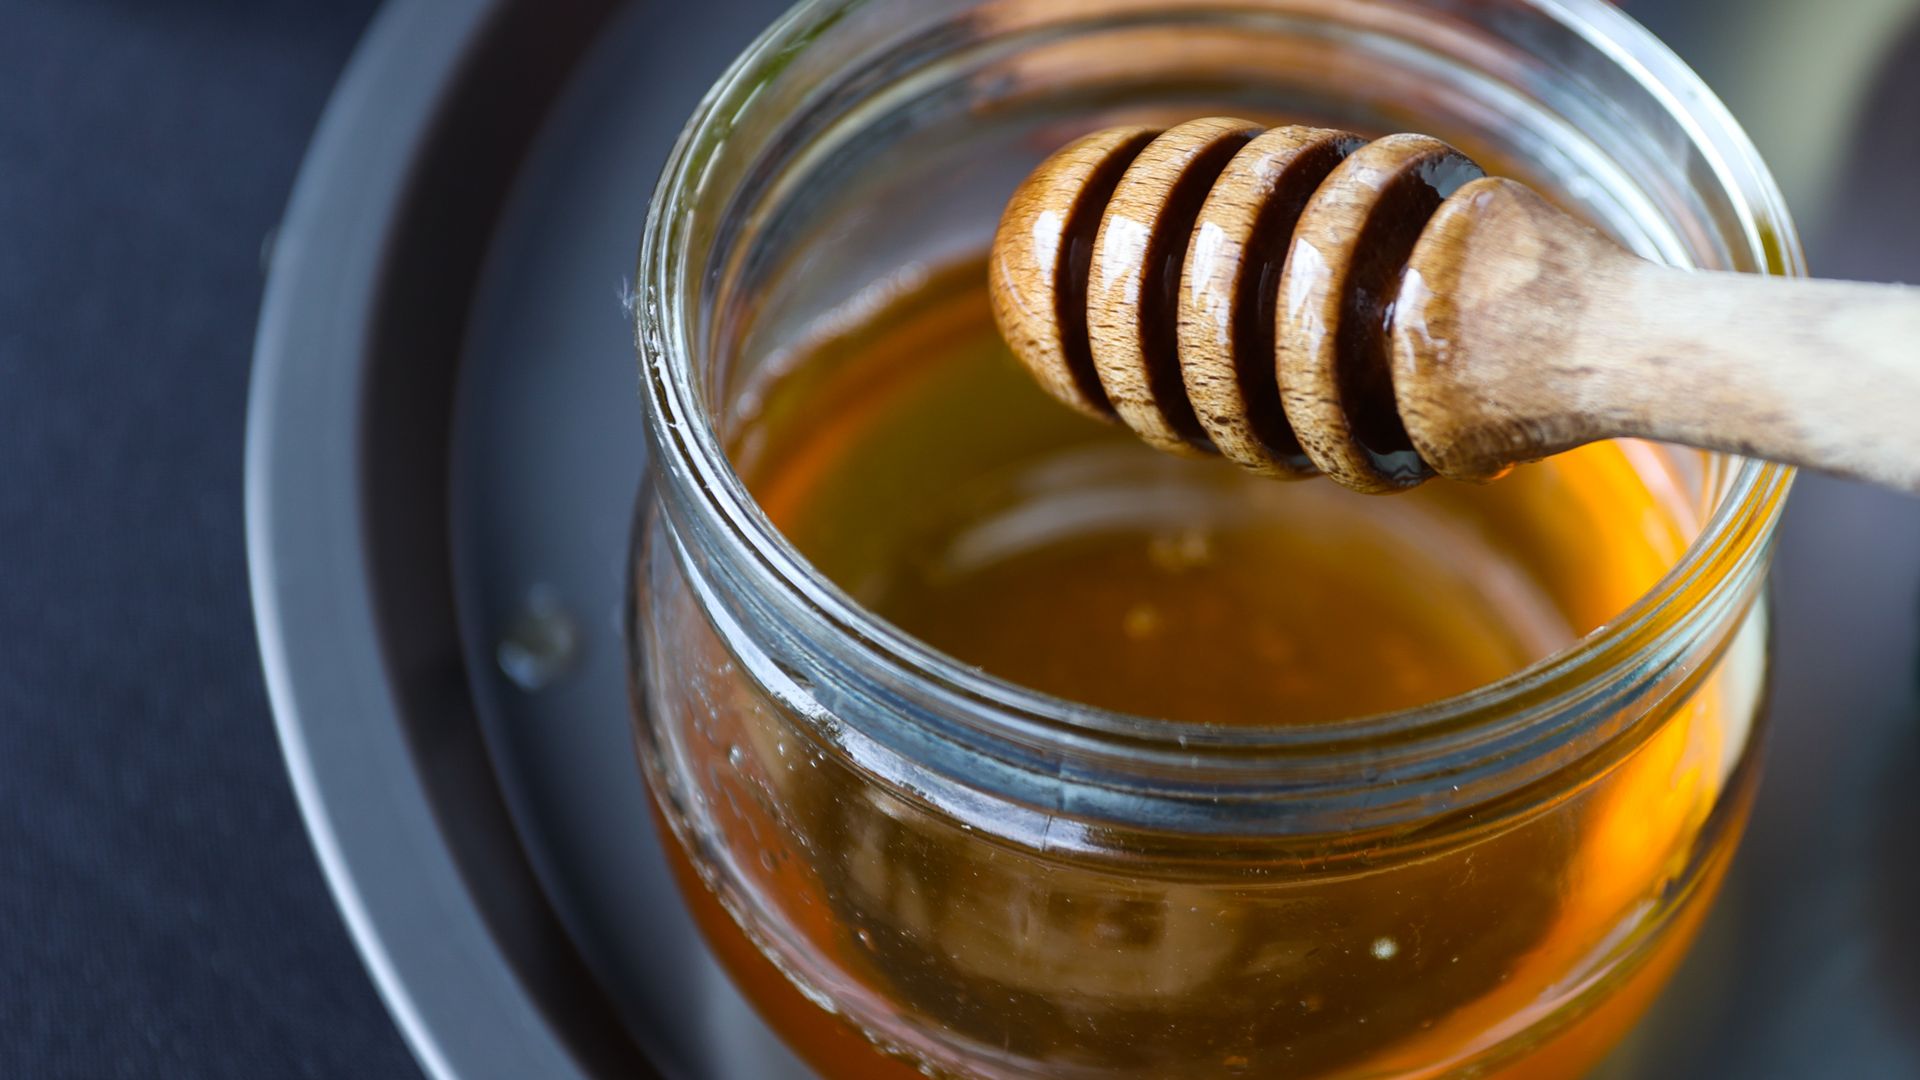 A jar of honey and a honey dipper